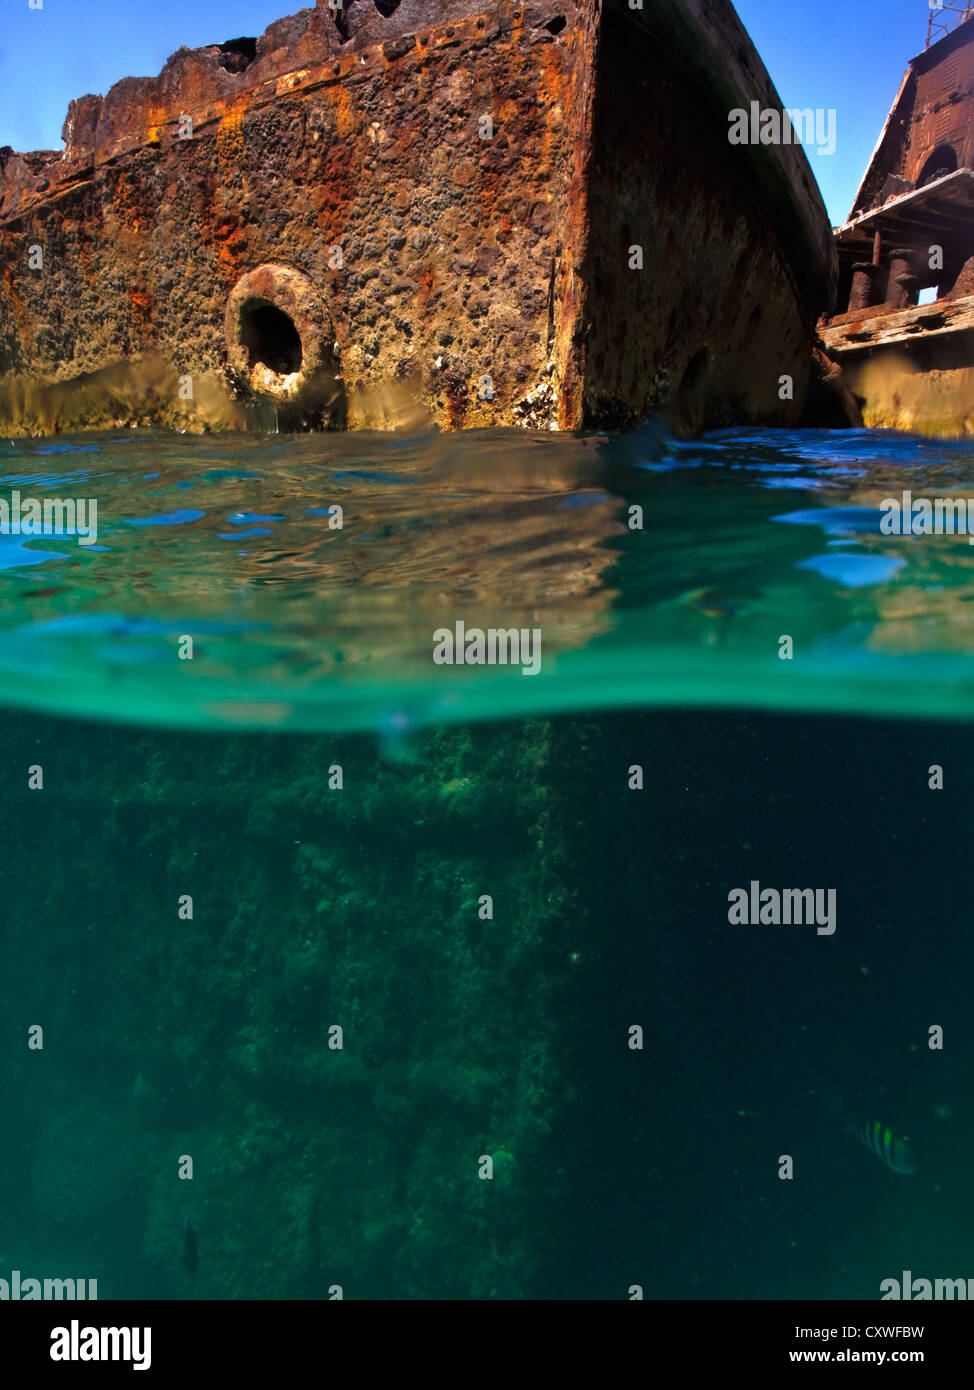 Coques rouillées de naufrages à l'Australie, de l'île Moreton photographié par plongeur au niveau de l'eau demi submergés dans une mer turquoise Banque D'Images